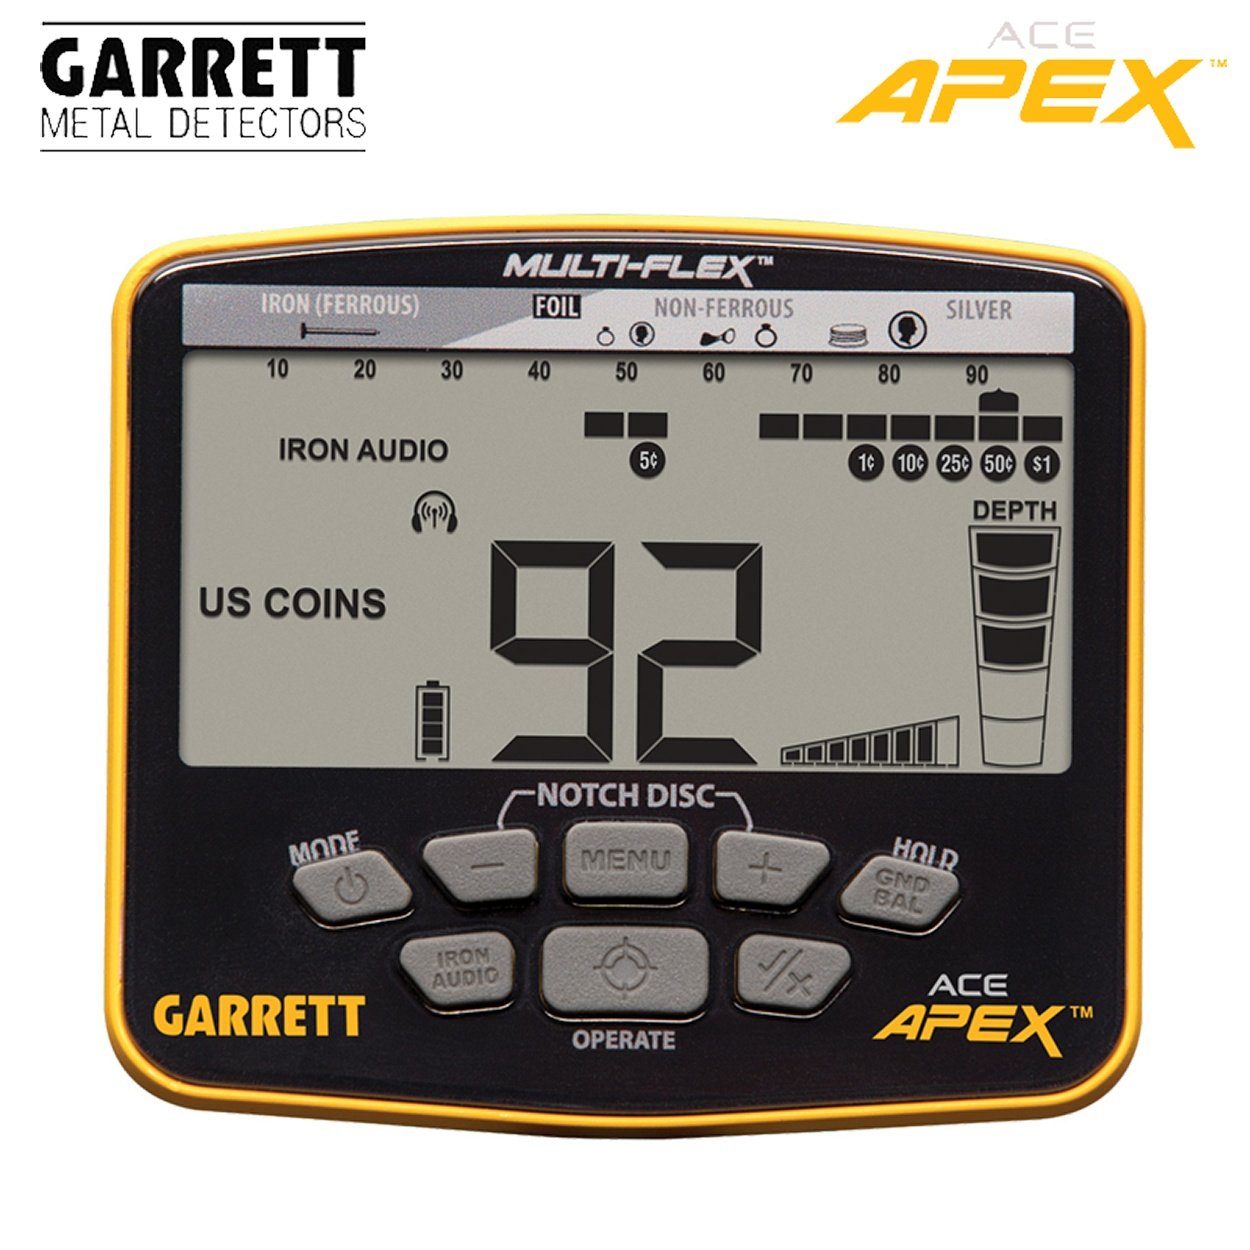 Metalldetektor APEX Ace Metalldetektor Garrett Garrett Pack) Raider (Wireless